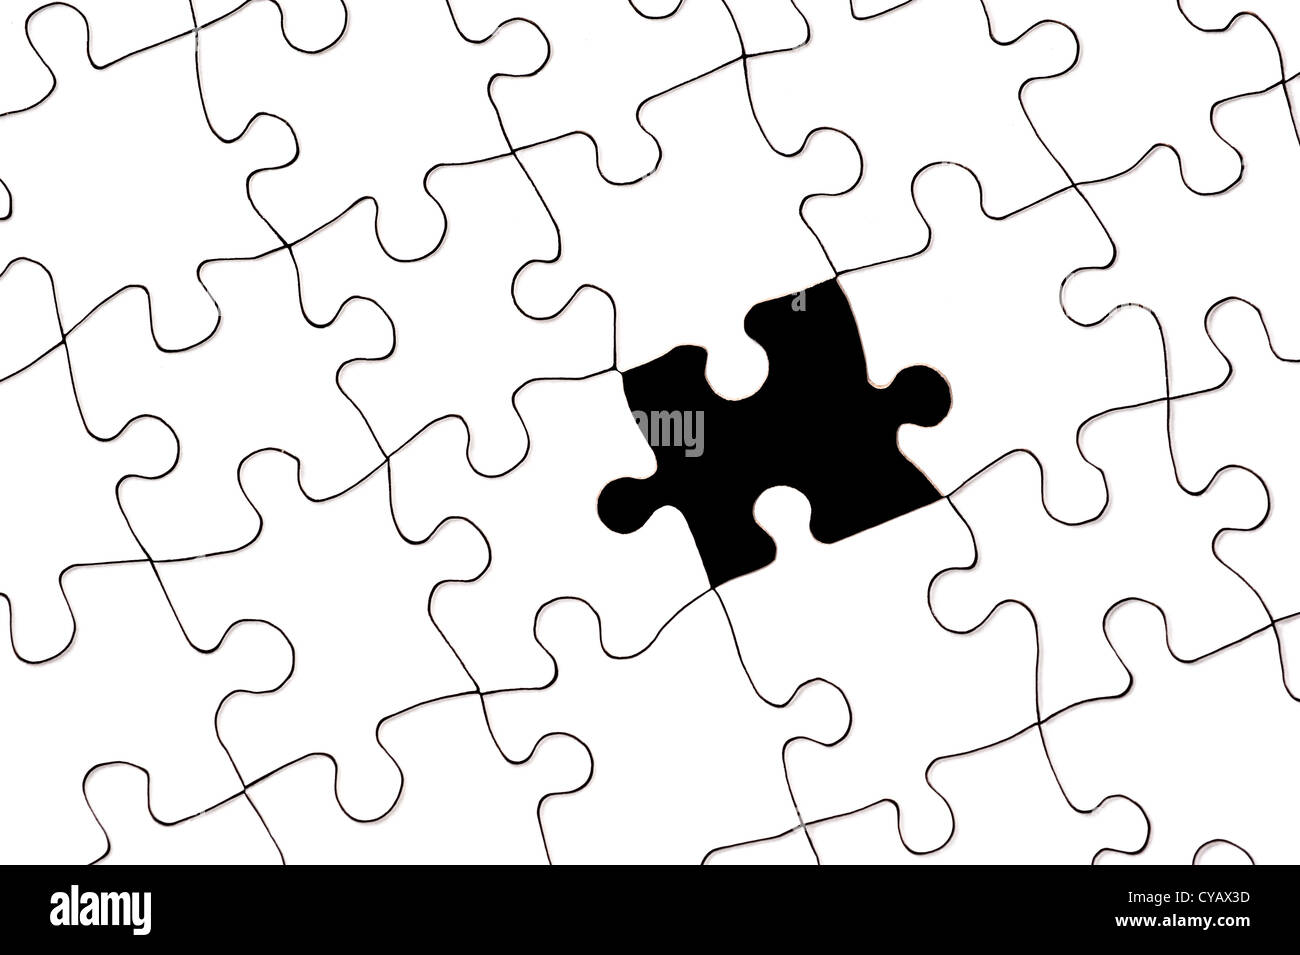 Un puzzle en blanco blanco con una sola pieza faltante. Foto de stock